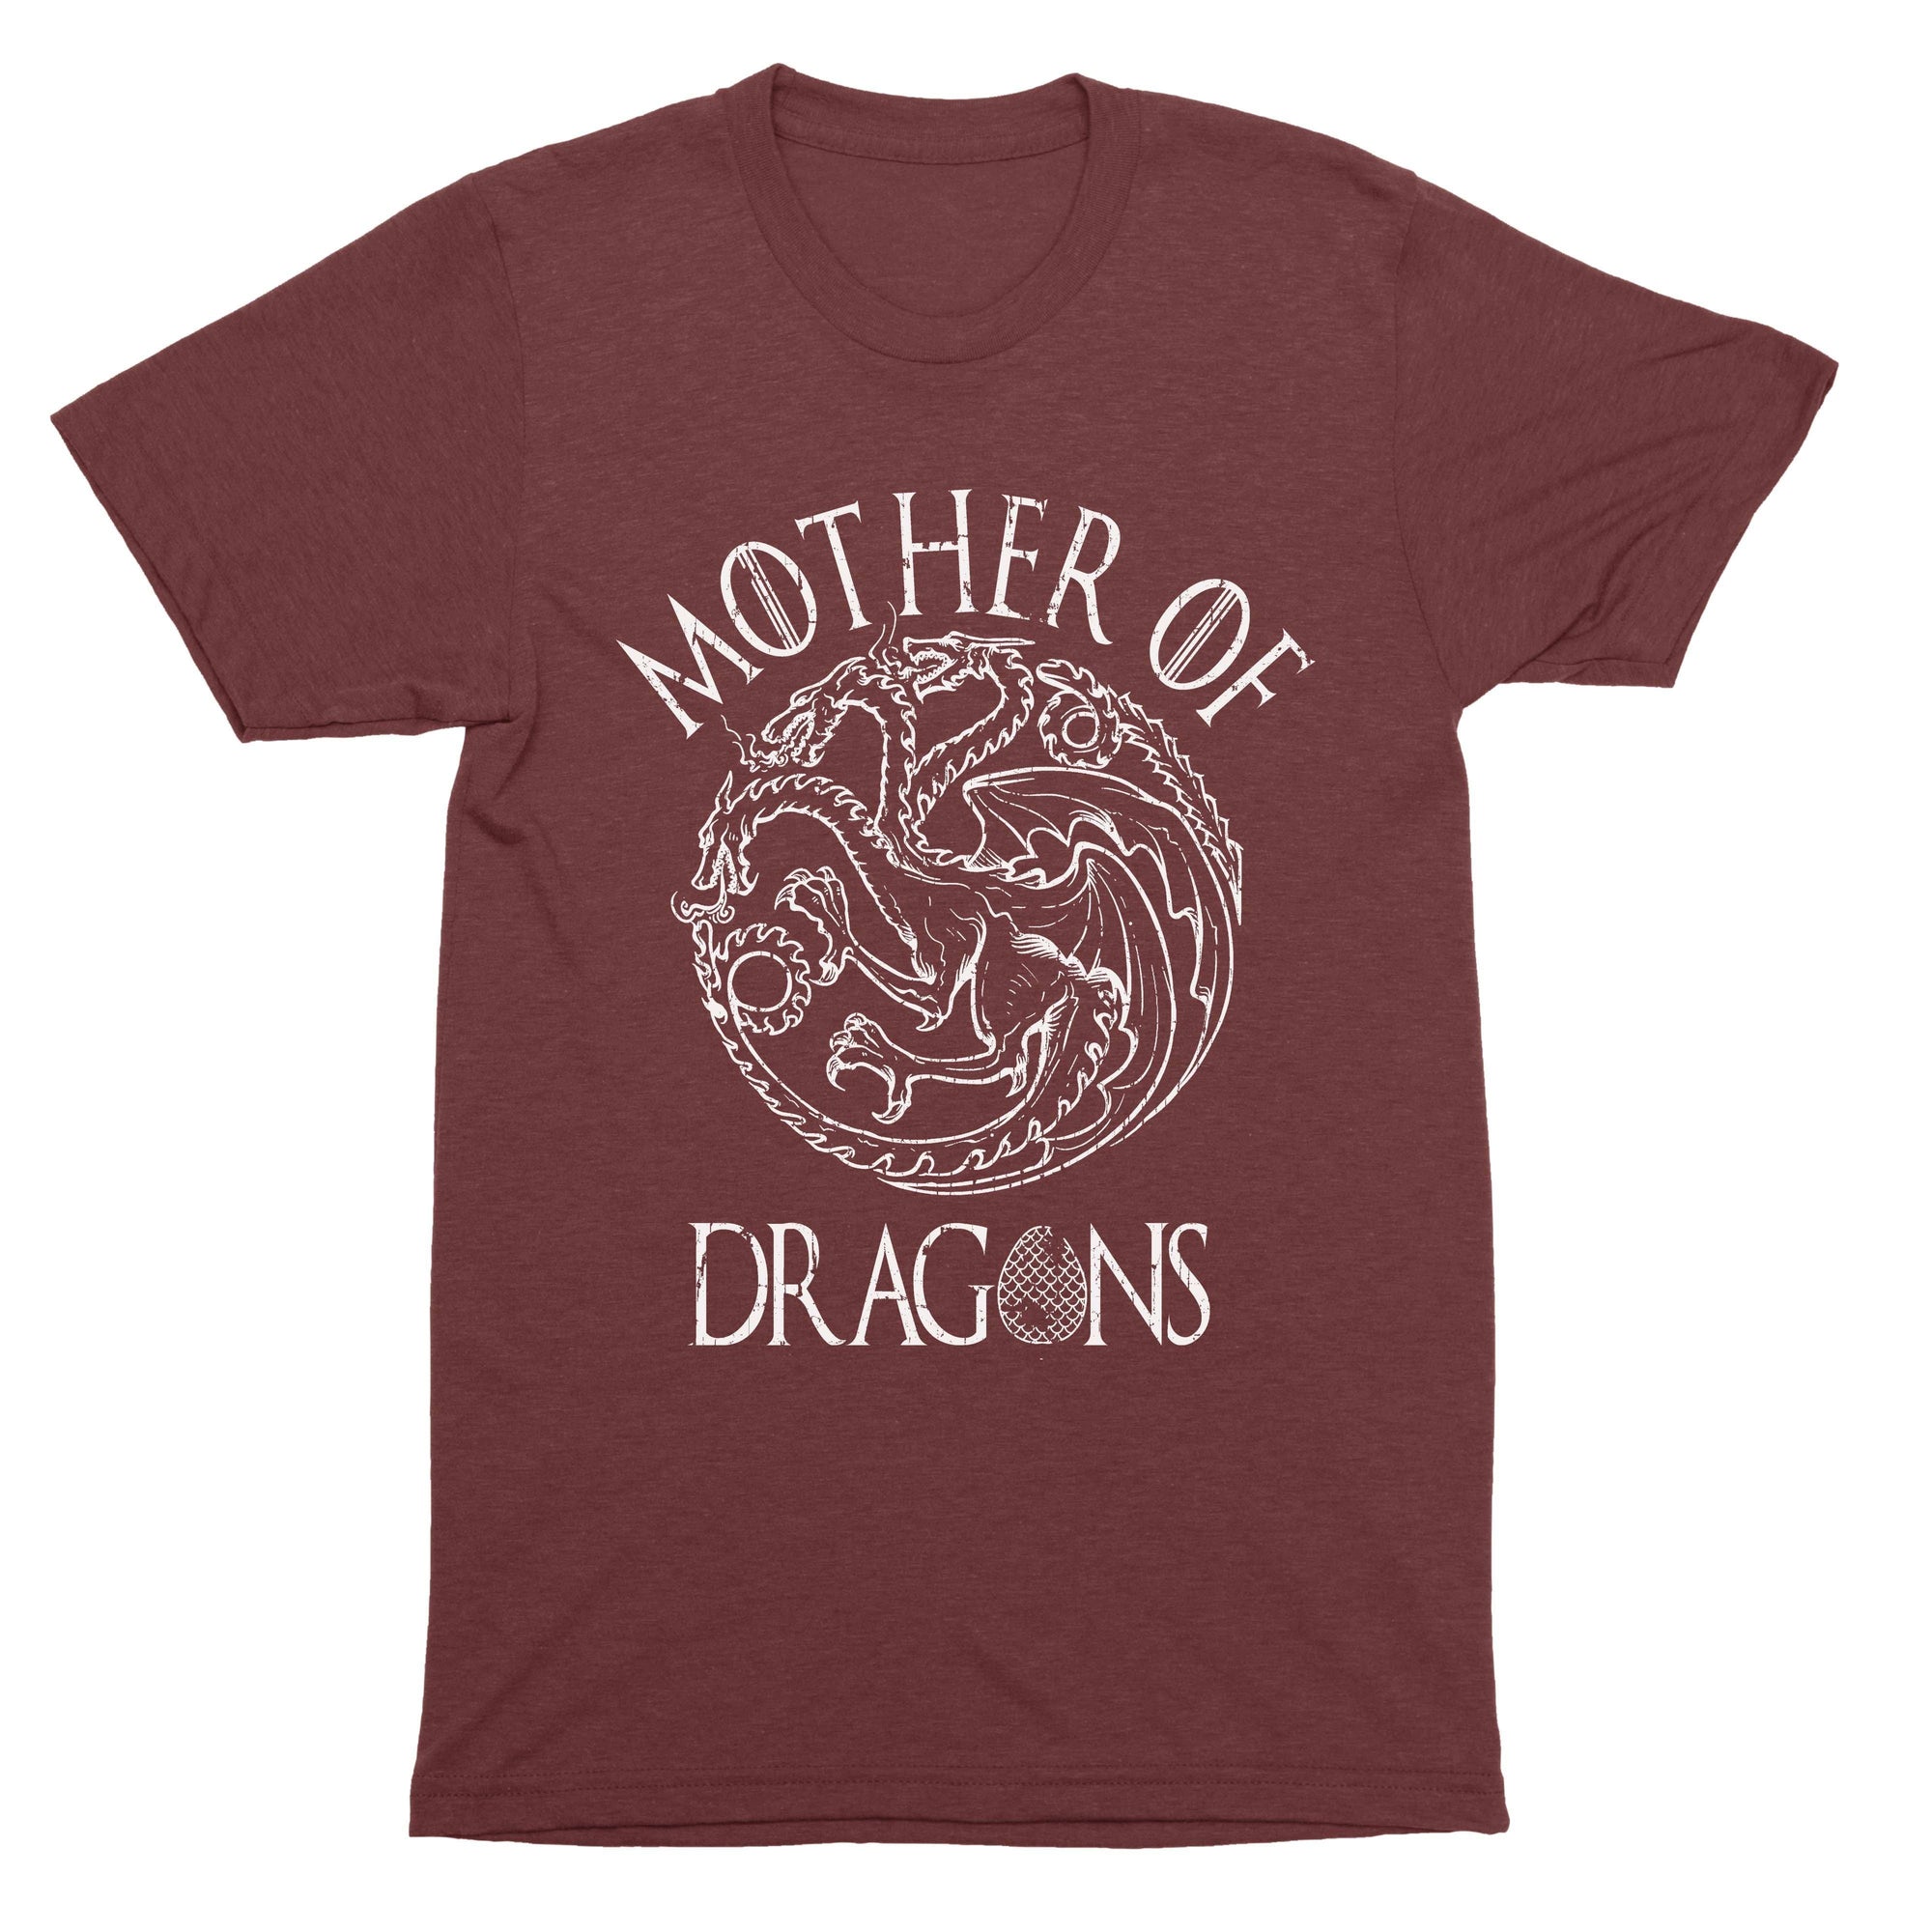 Mother Of Dragons Shirt-T-Shirts-Shirtasaurus-Basic-S-Maroon-Shirtasaurus